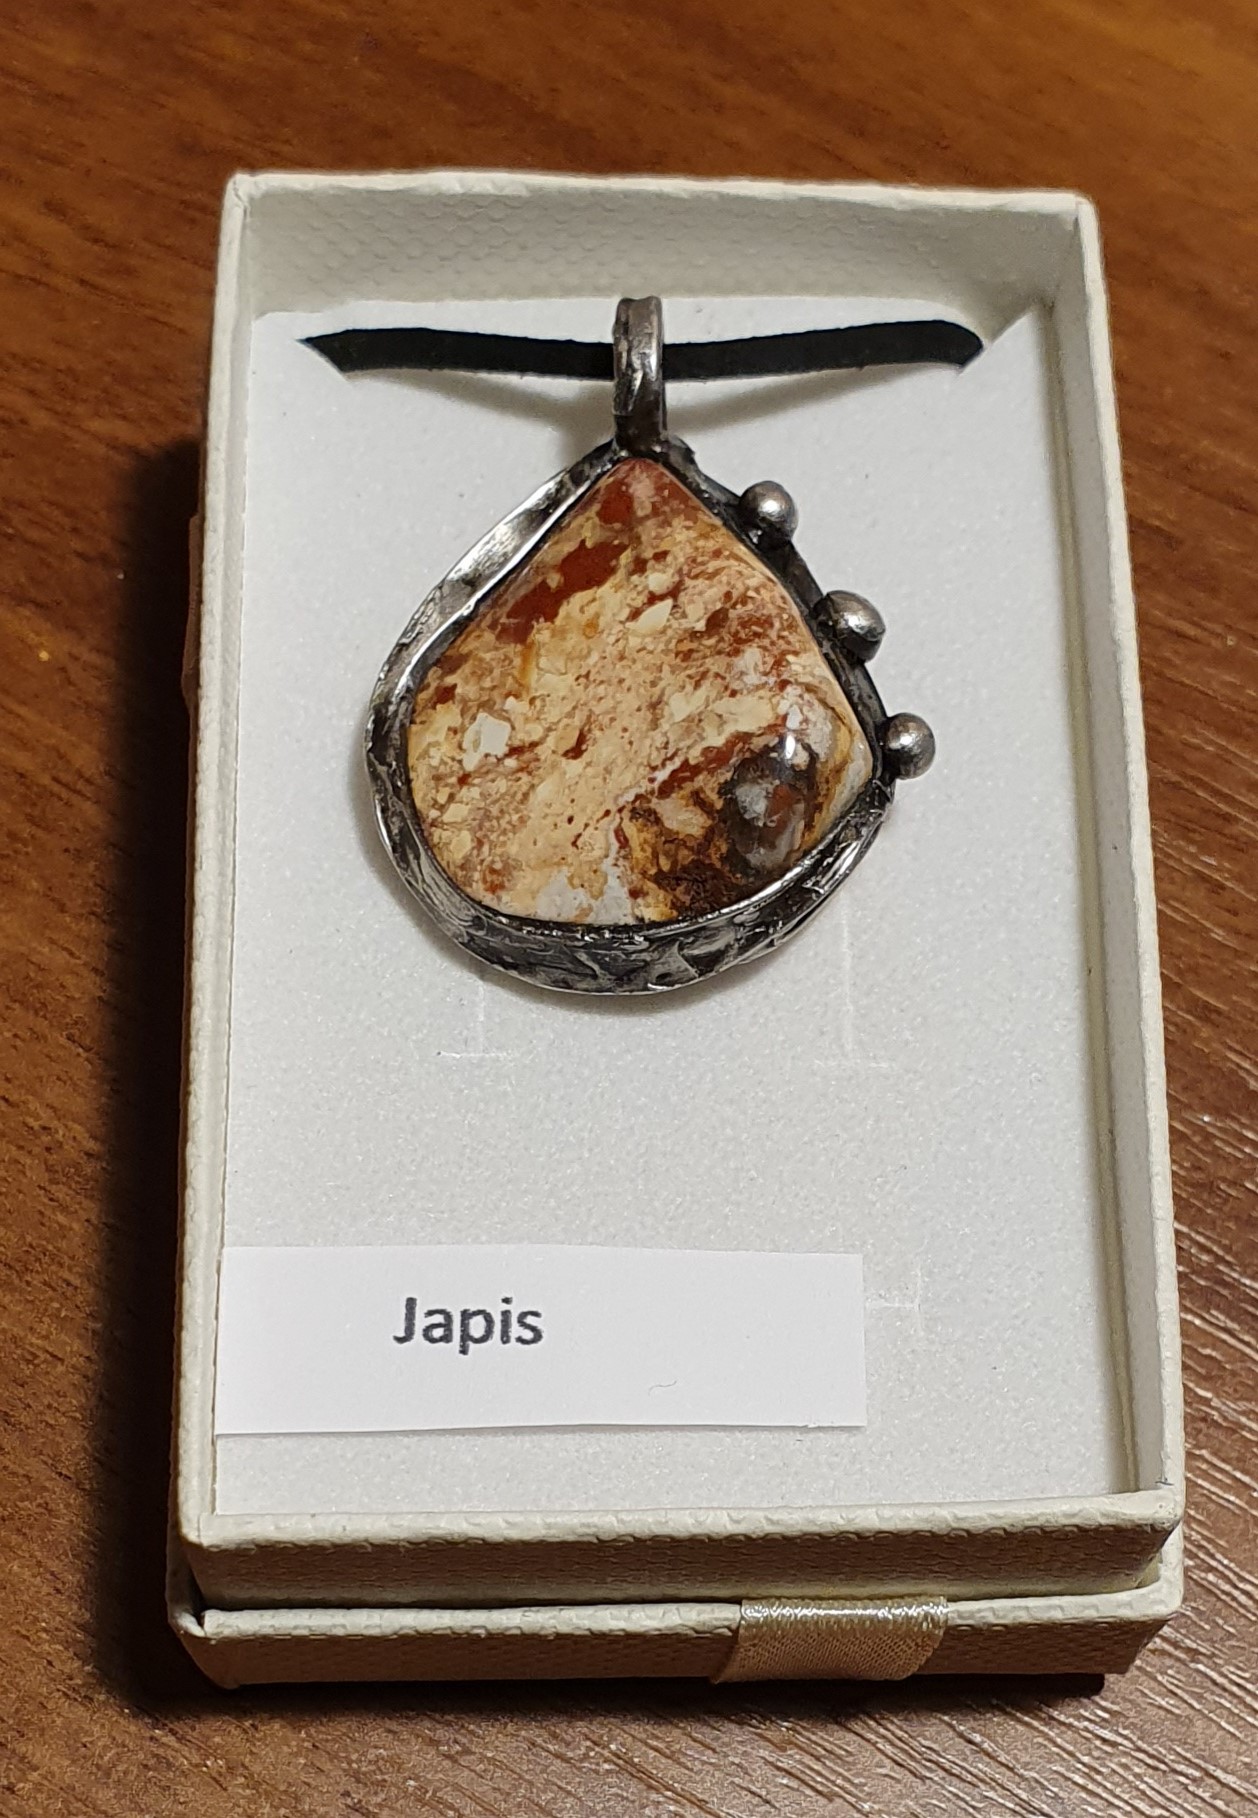 Náhrdelník - autorský cínovaný šperk s Jaspisem(4x3cm), cena 450 Kč